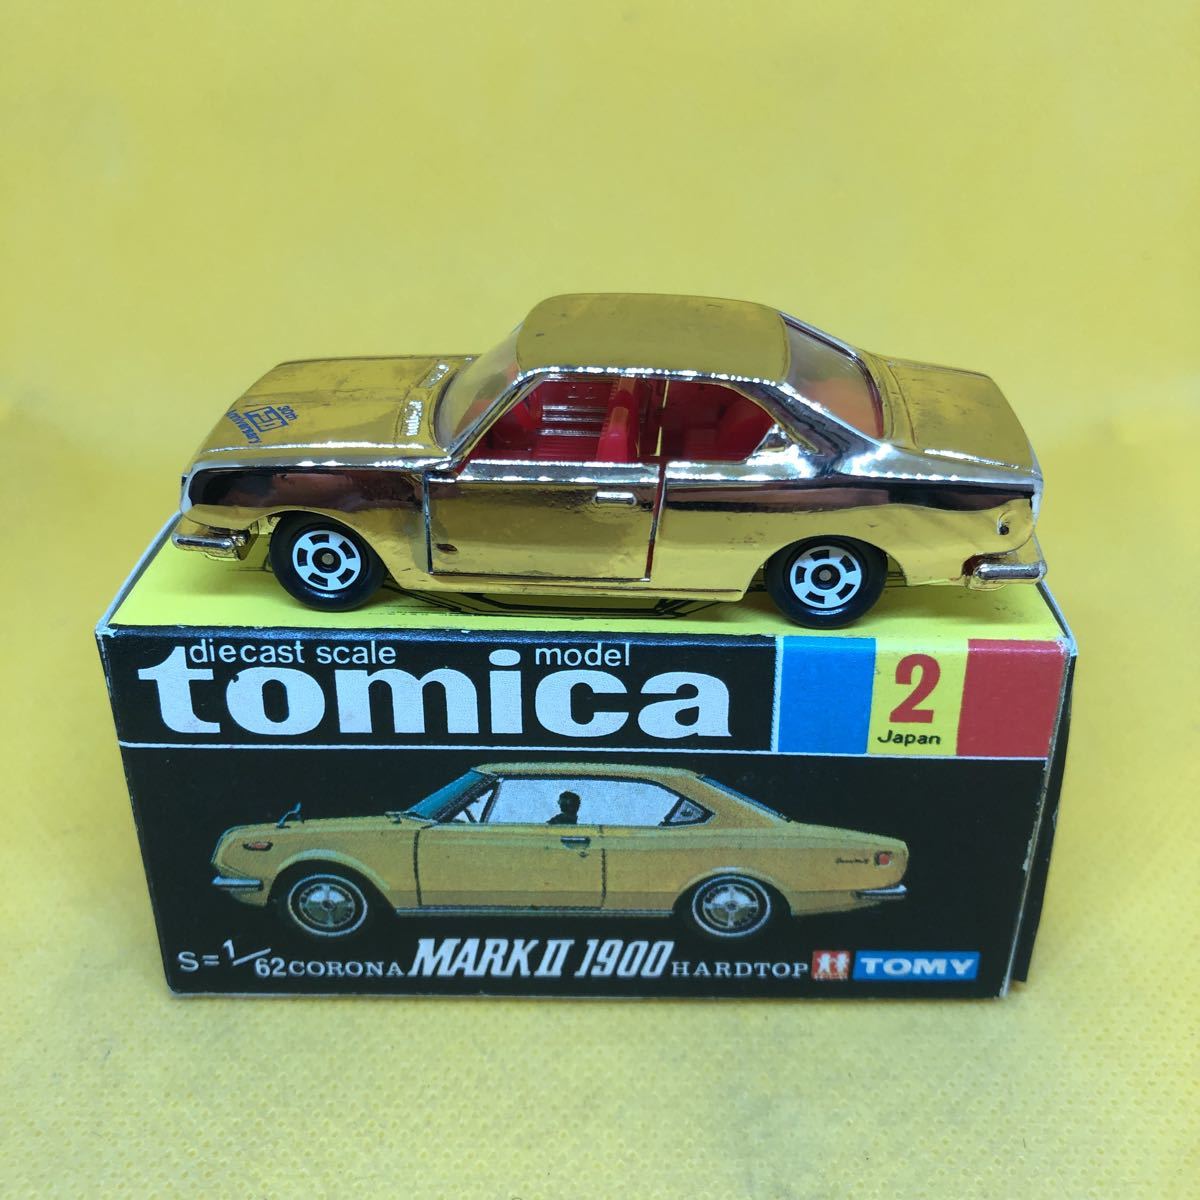 トミカ 中国製 黒箱 2 コロナ マークii 1900ハードトップ 当時物 絶版